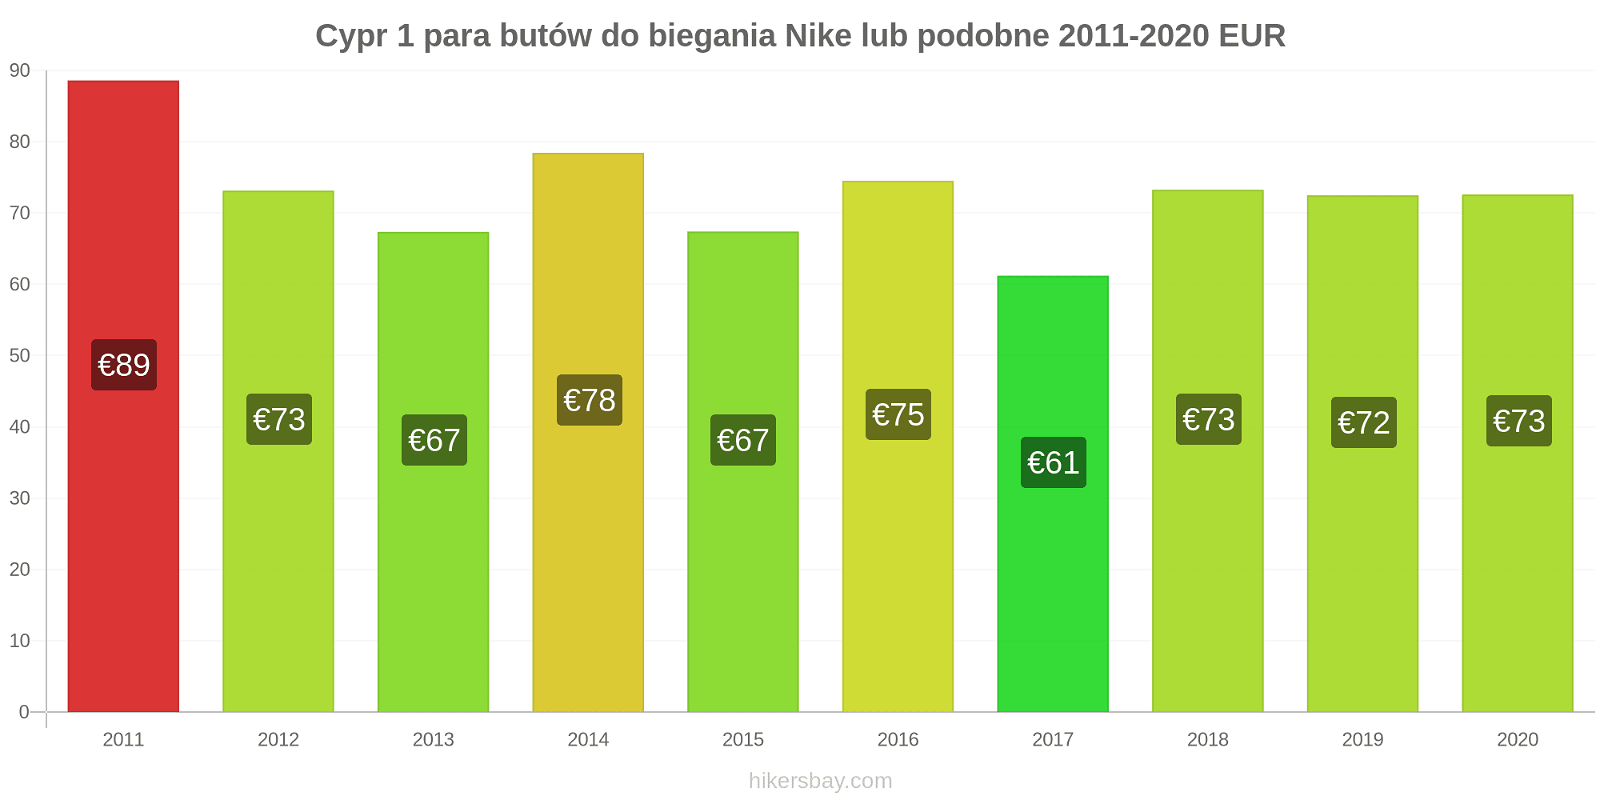 Cypr zmiany cen 1 para butów do biegania Nike lub podobne hikersbay.com